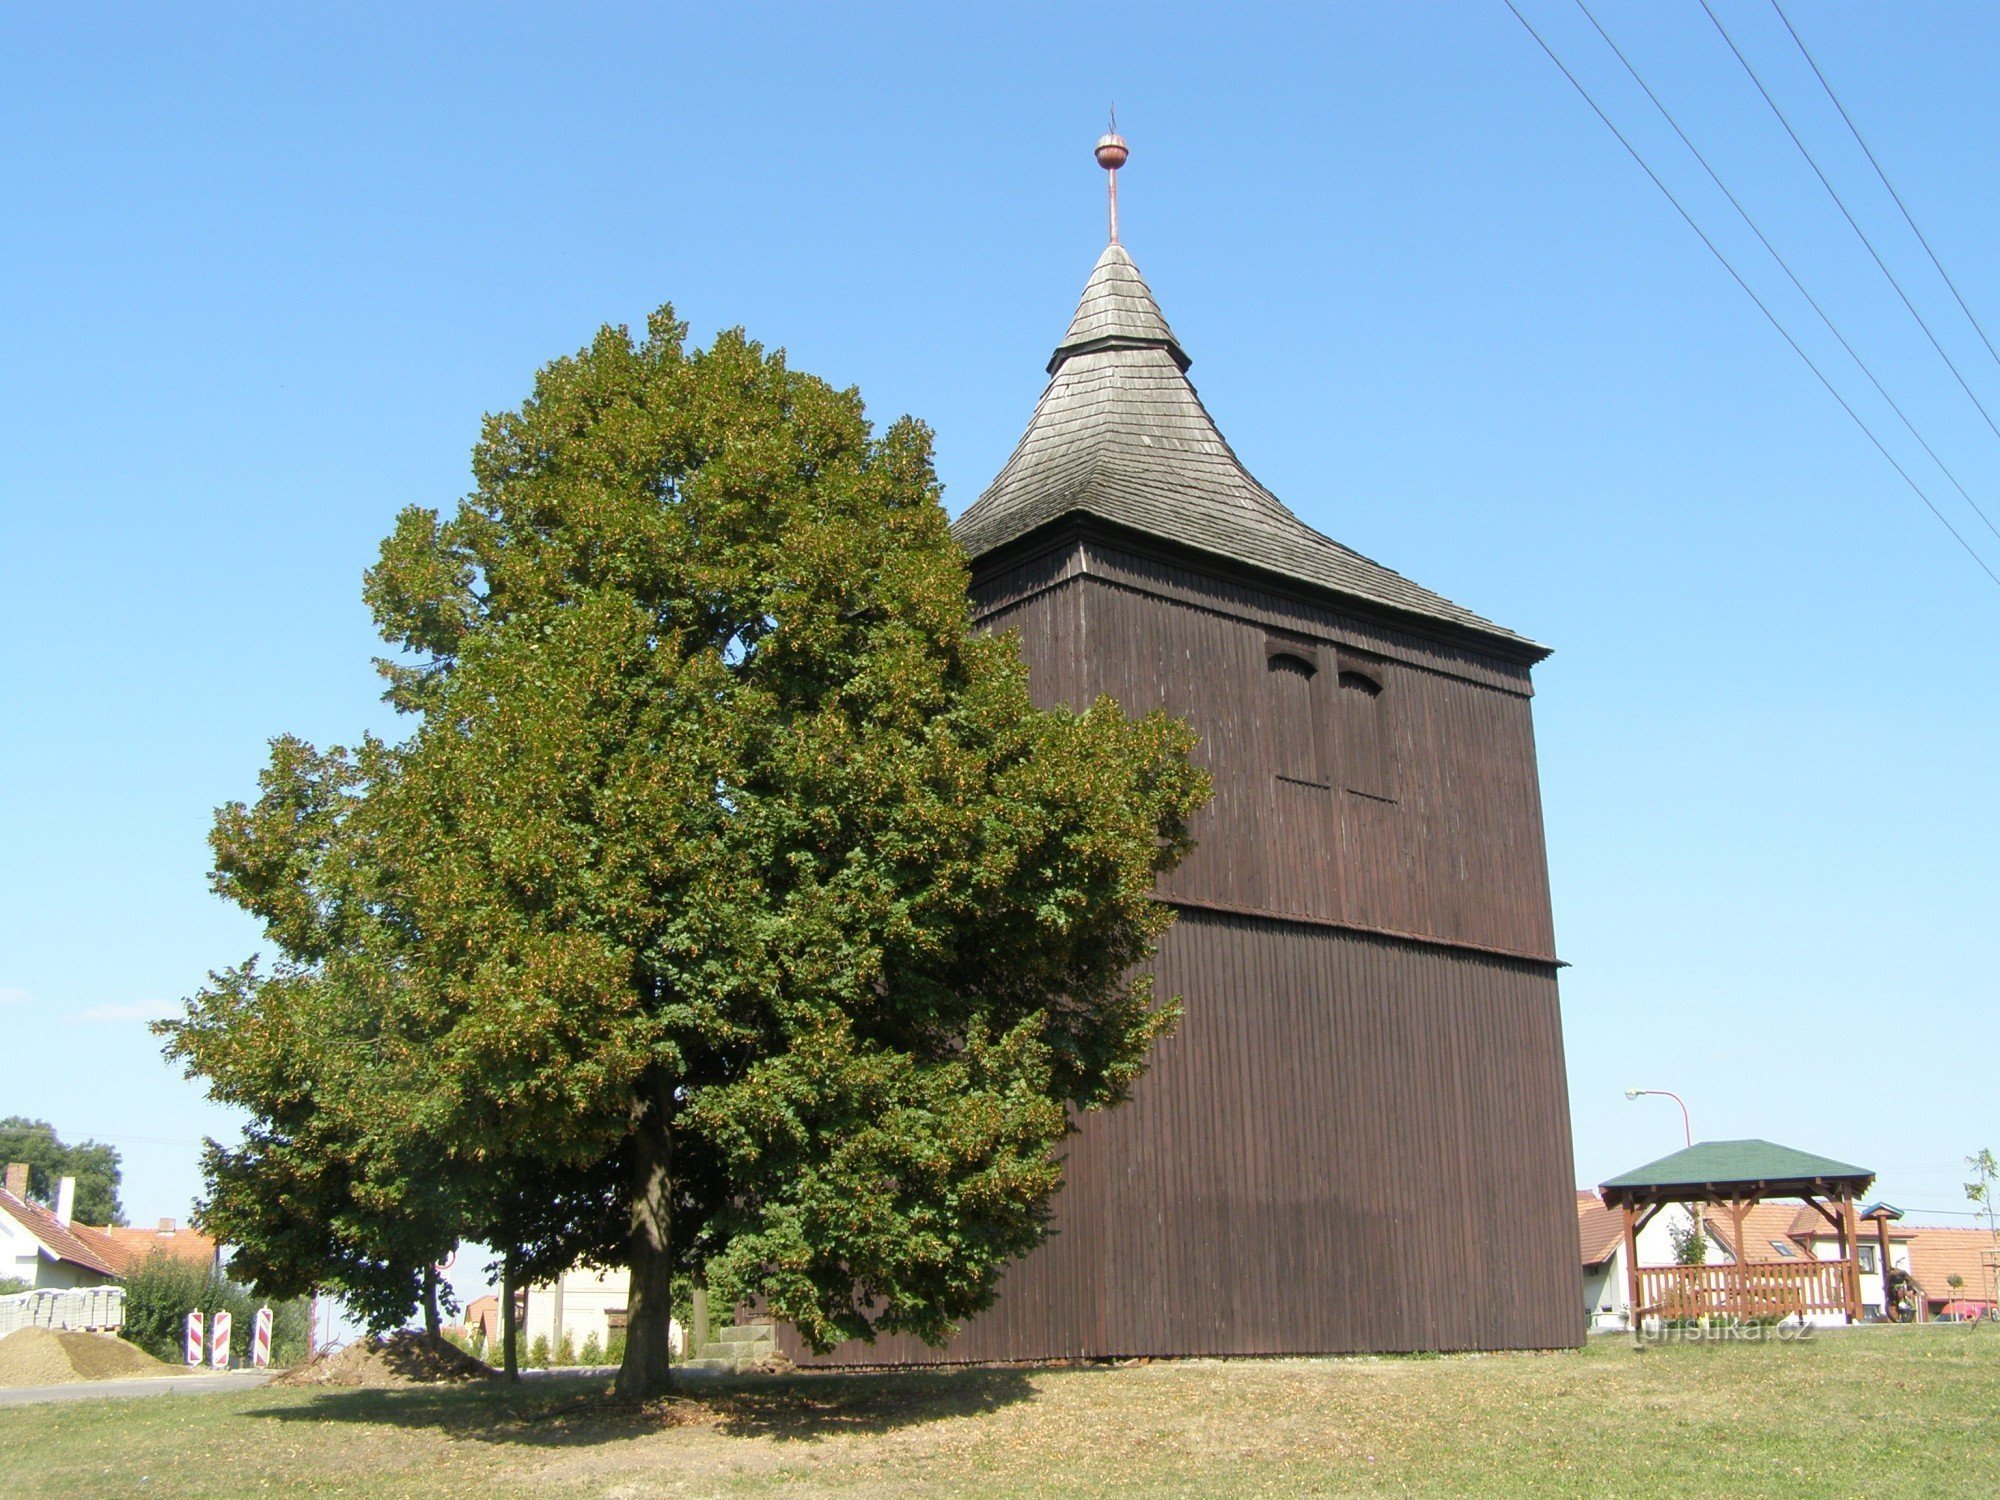 Stará Voda - wooden bell tower